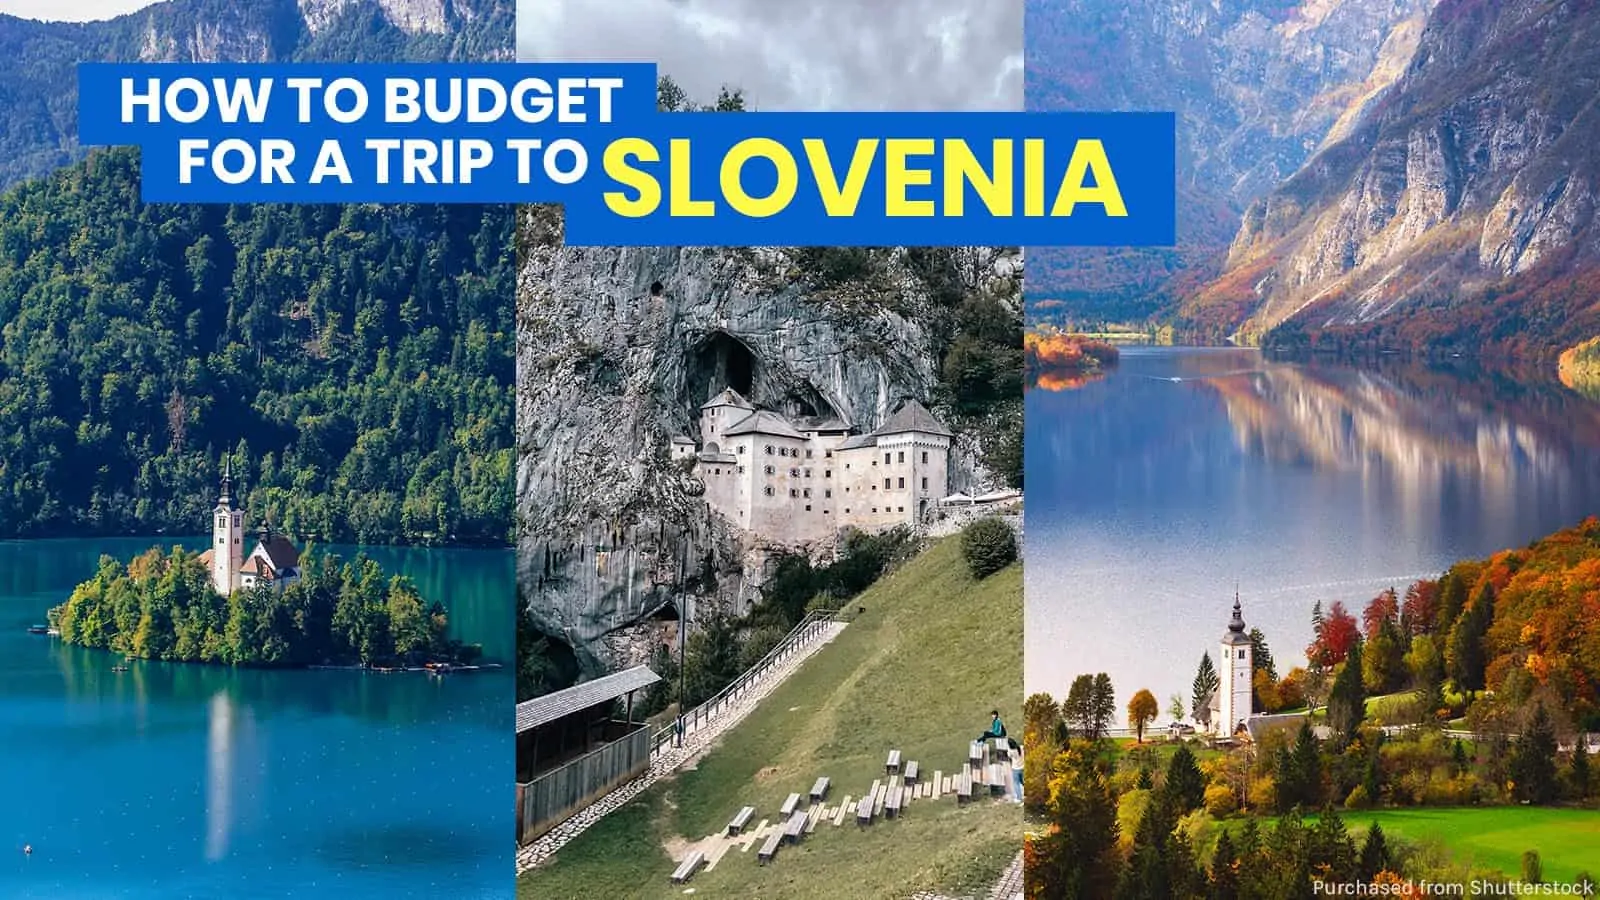 斯洛文尼亚旅游指南:卢布尔雅那行程和预算